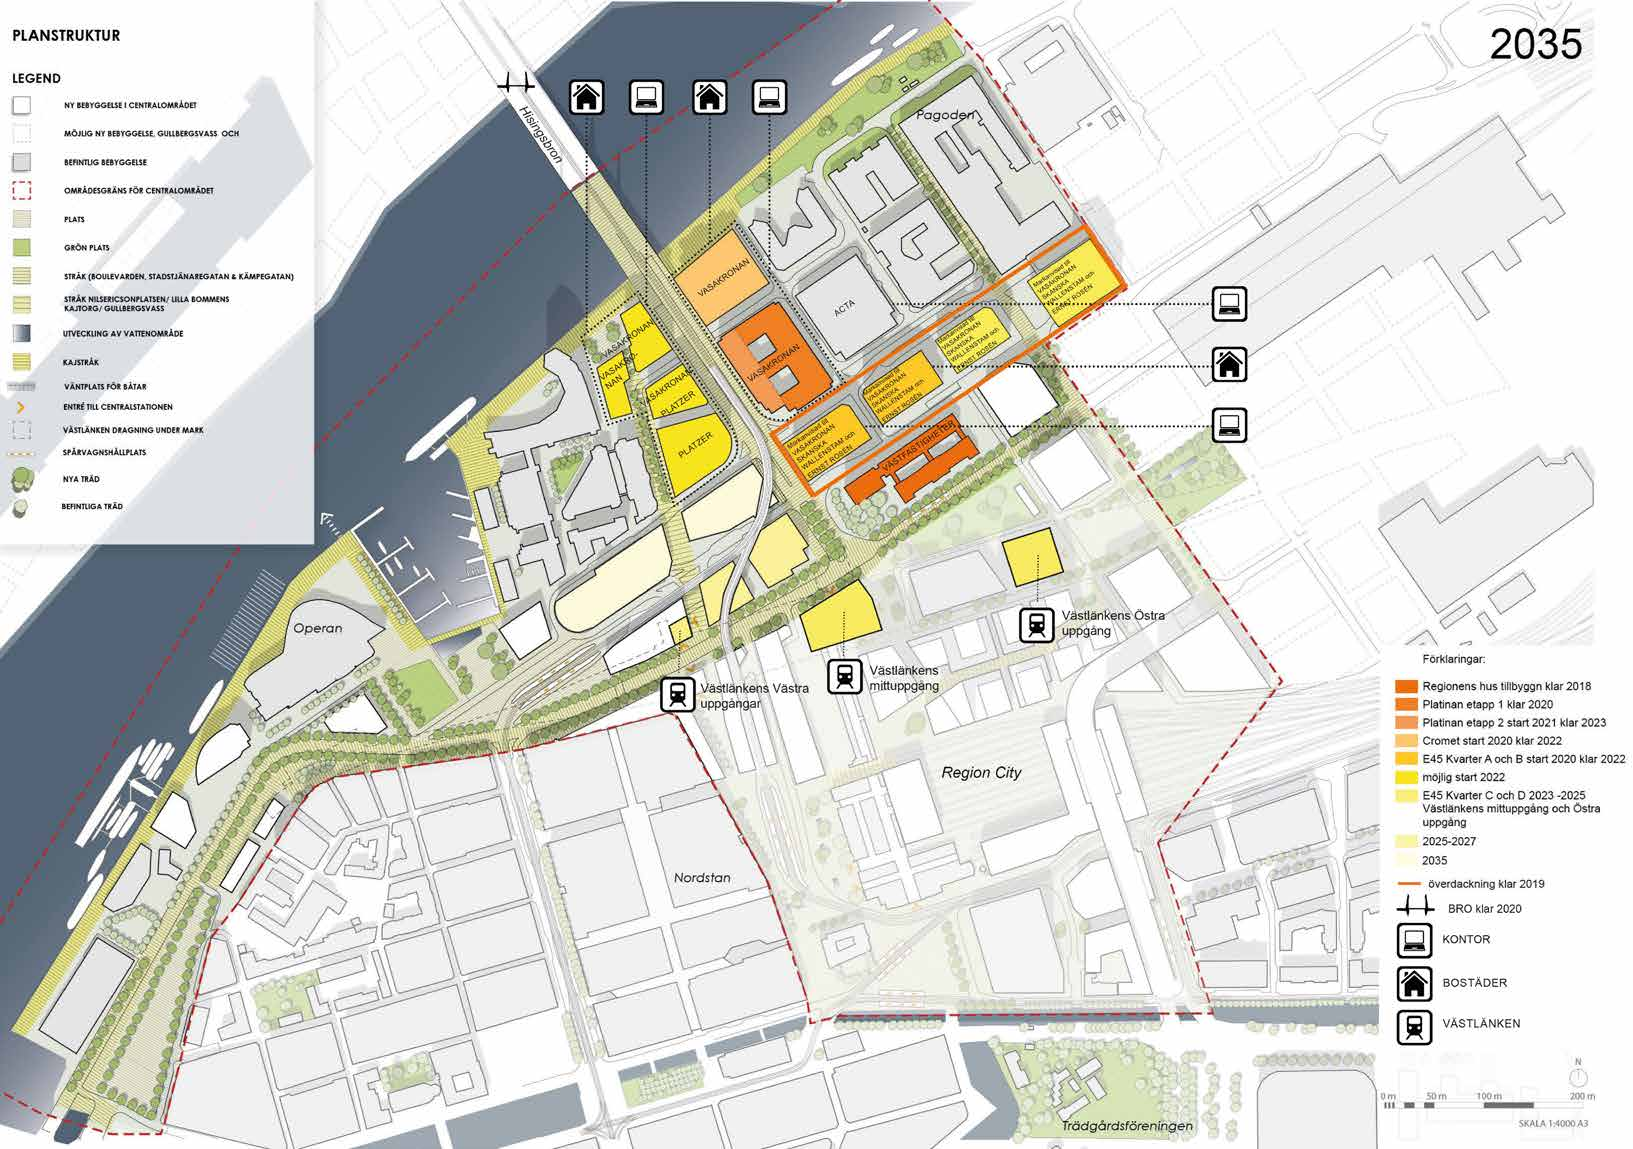 Framtida läge Göteborg lever och växer. Miljarder investeras i visionen om Älvstaden som är antagen av Göteborgs stad. En ny bro ska byggas liksom nya hus för kontor och bostäder.